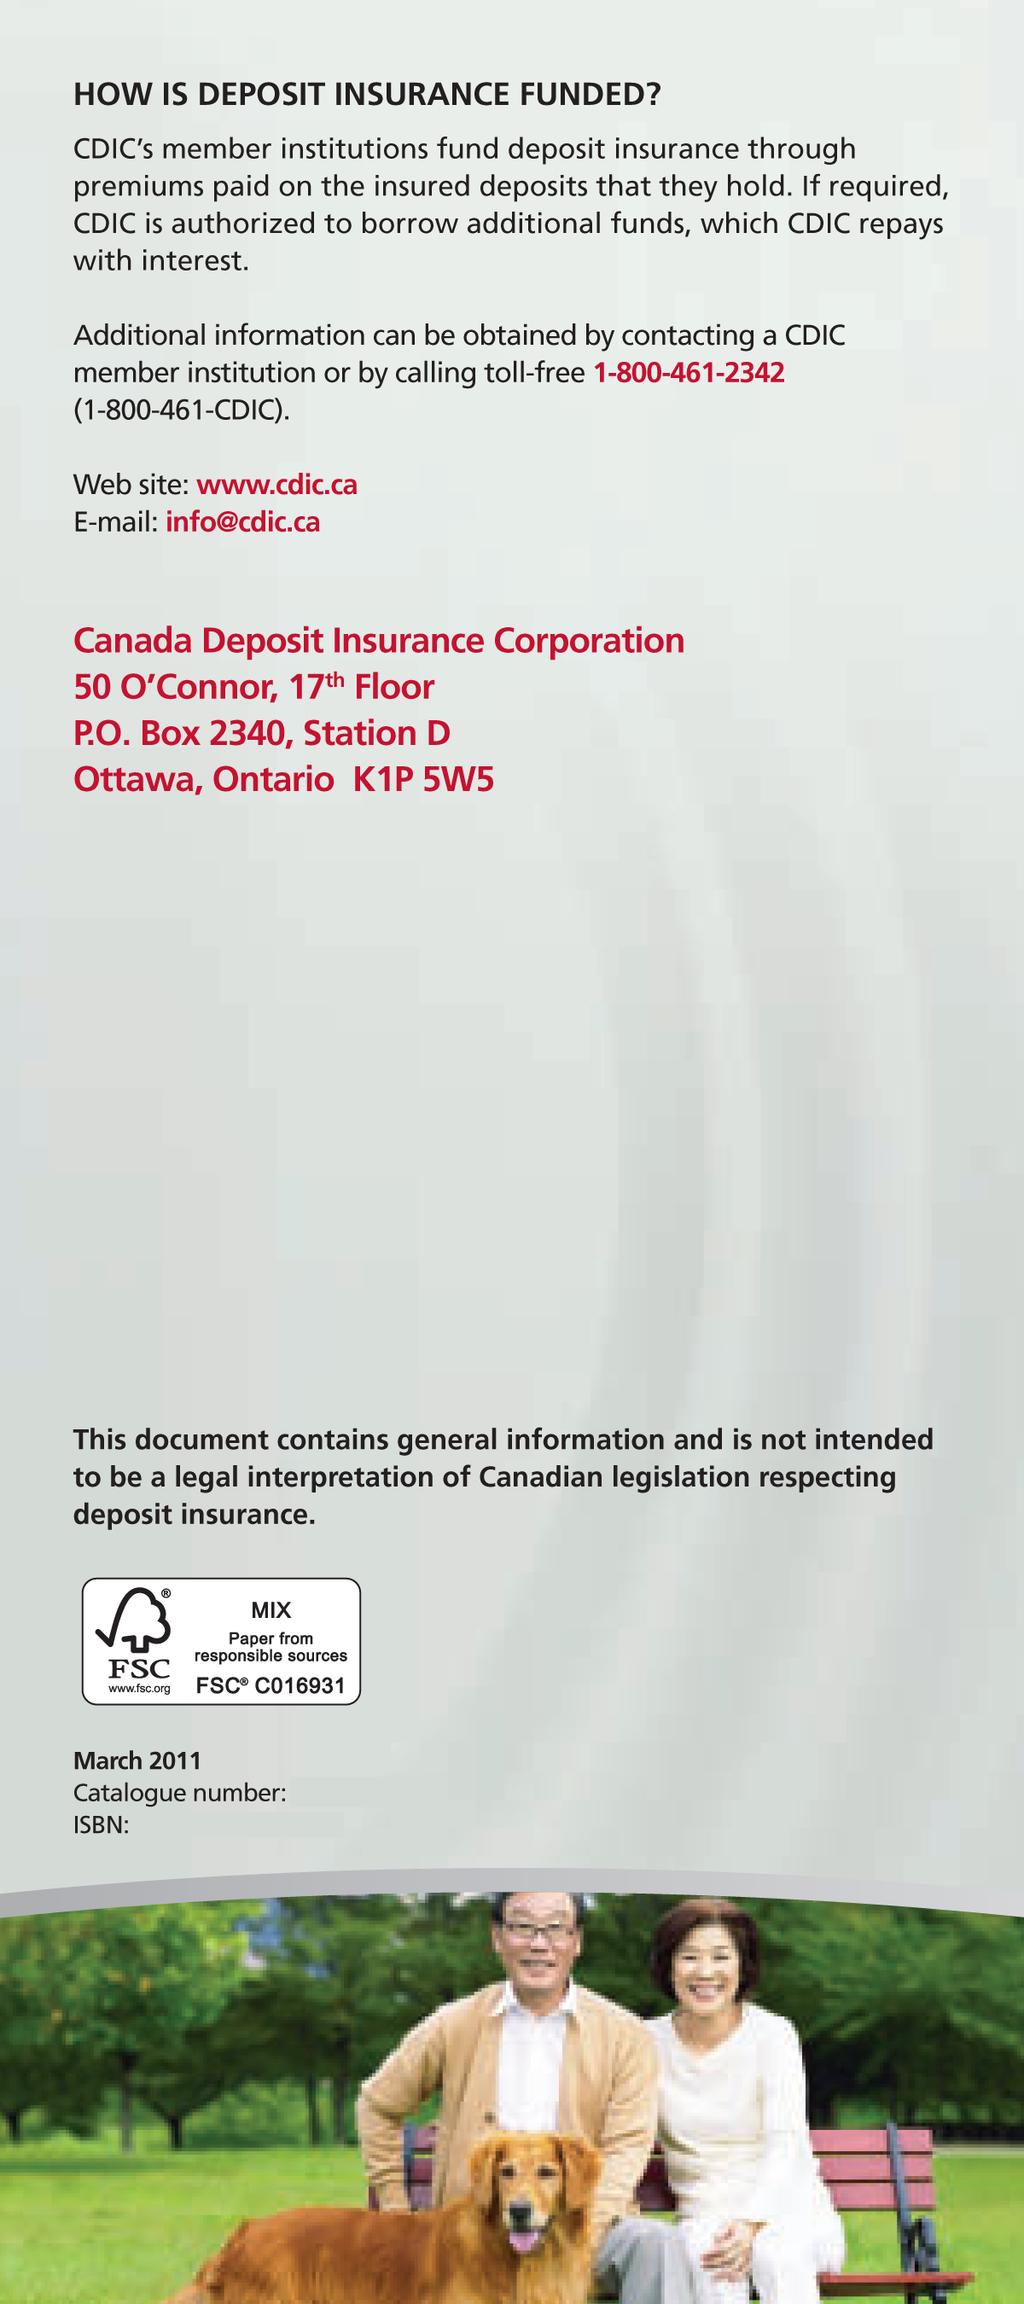 CC394-3/2011E-PDF